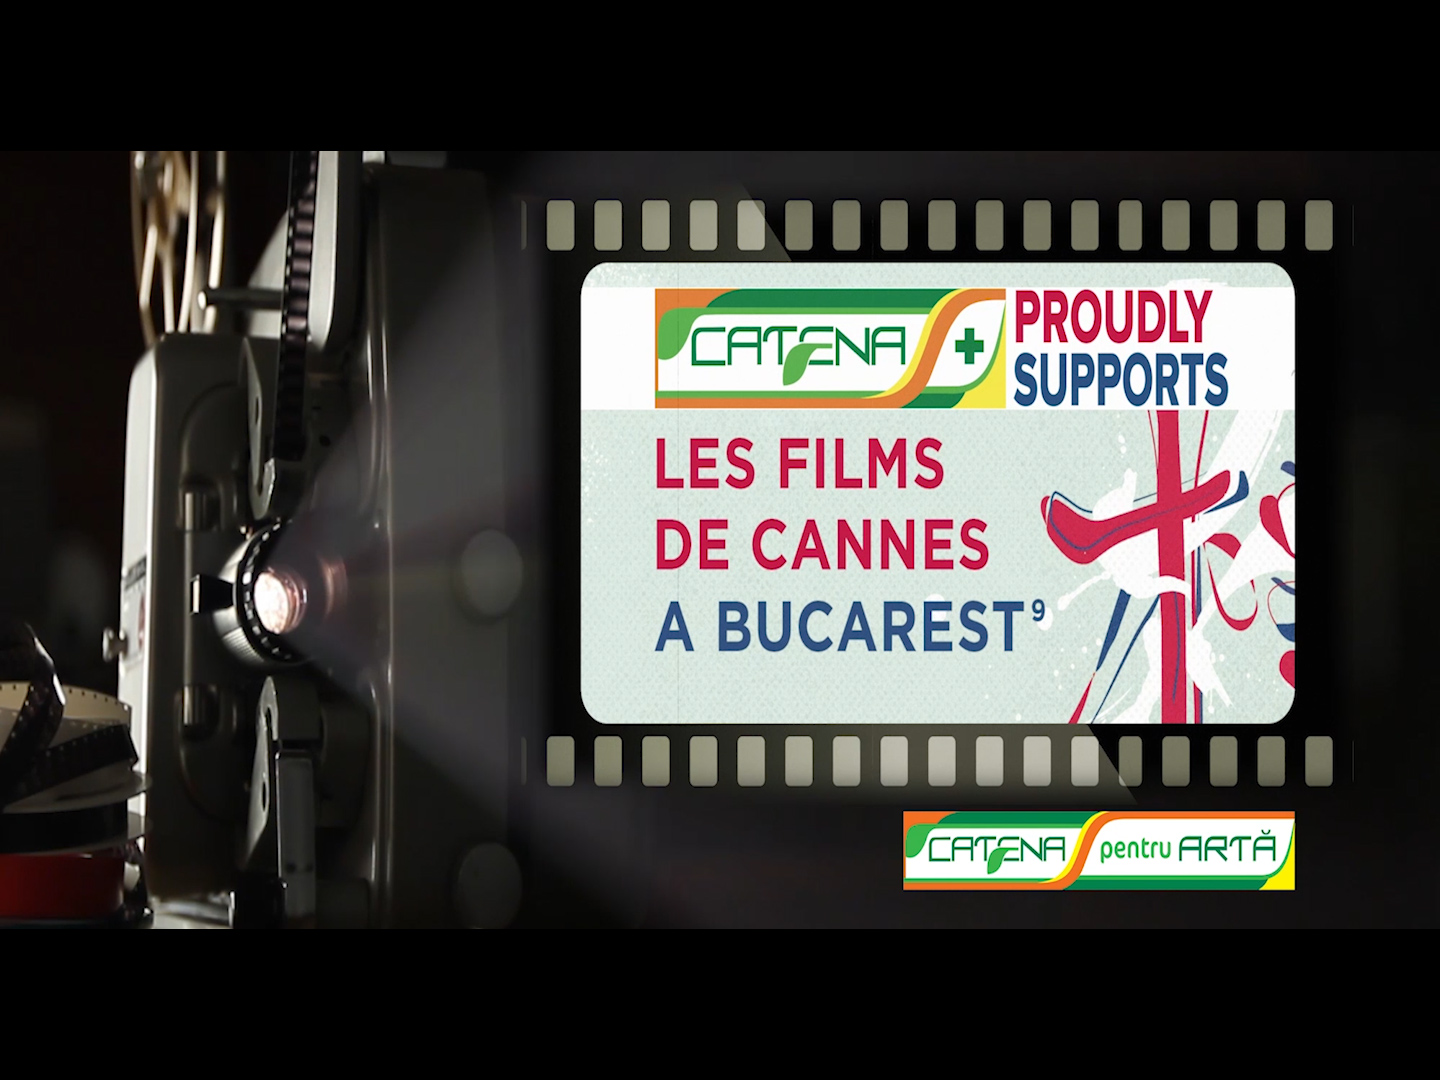 CATENA sustine Les Films de Cannes a Bucarest IX